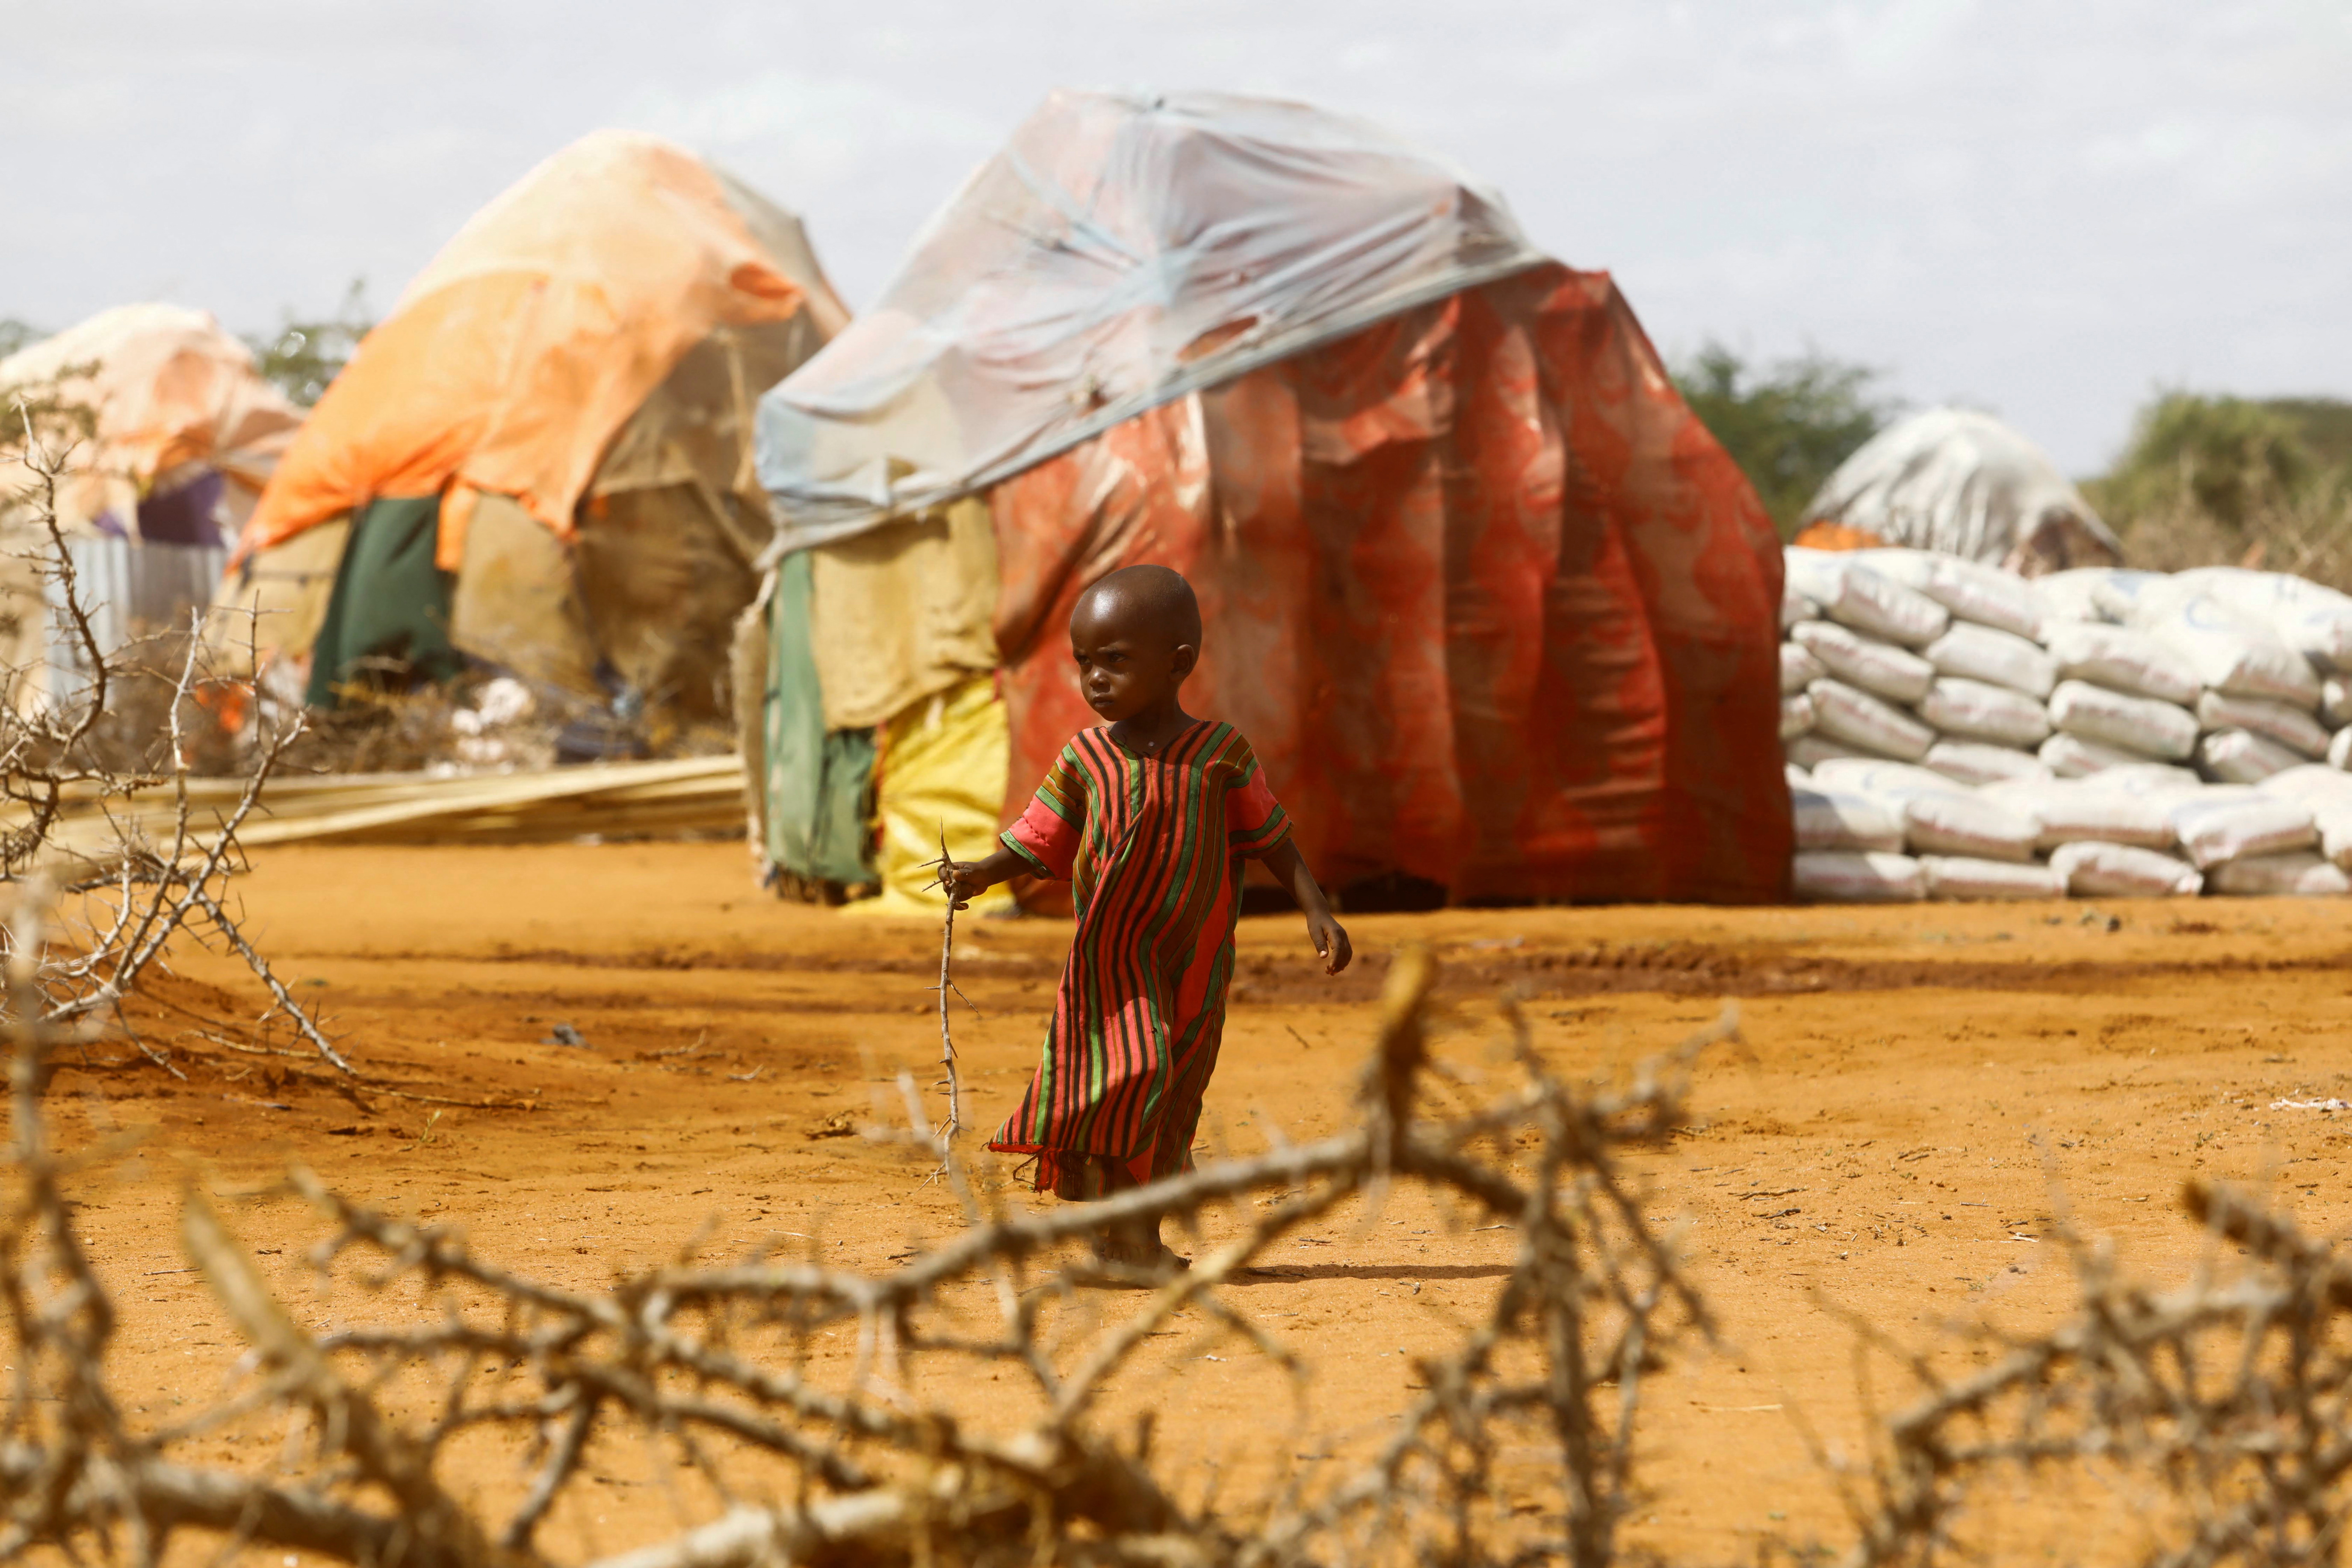 Un niño camina fuera de los refugios improvisados en el campamento de Kaxareey para los desplazados internos después de que huyeron de las graves sequías, en Dollow, región de Gedo, Somalia (Reuters)